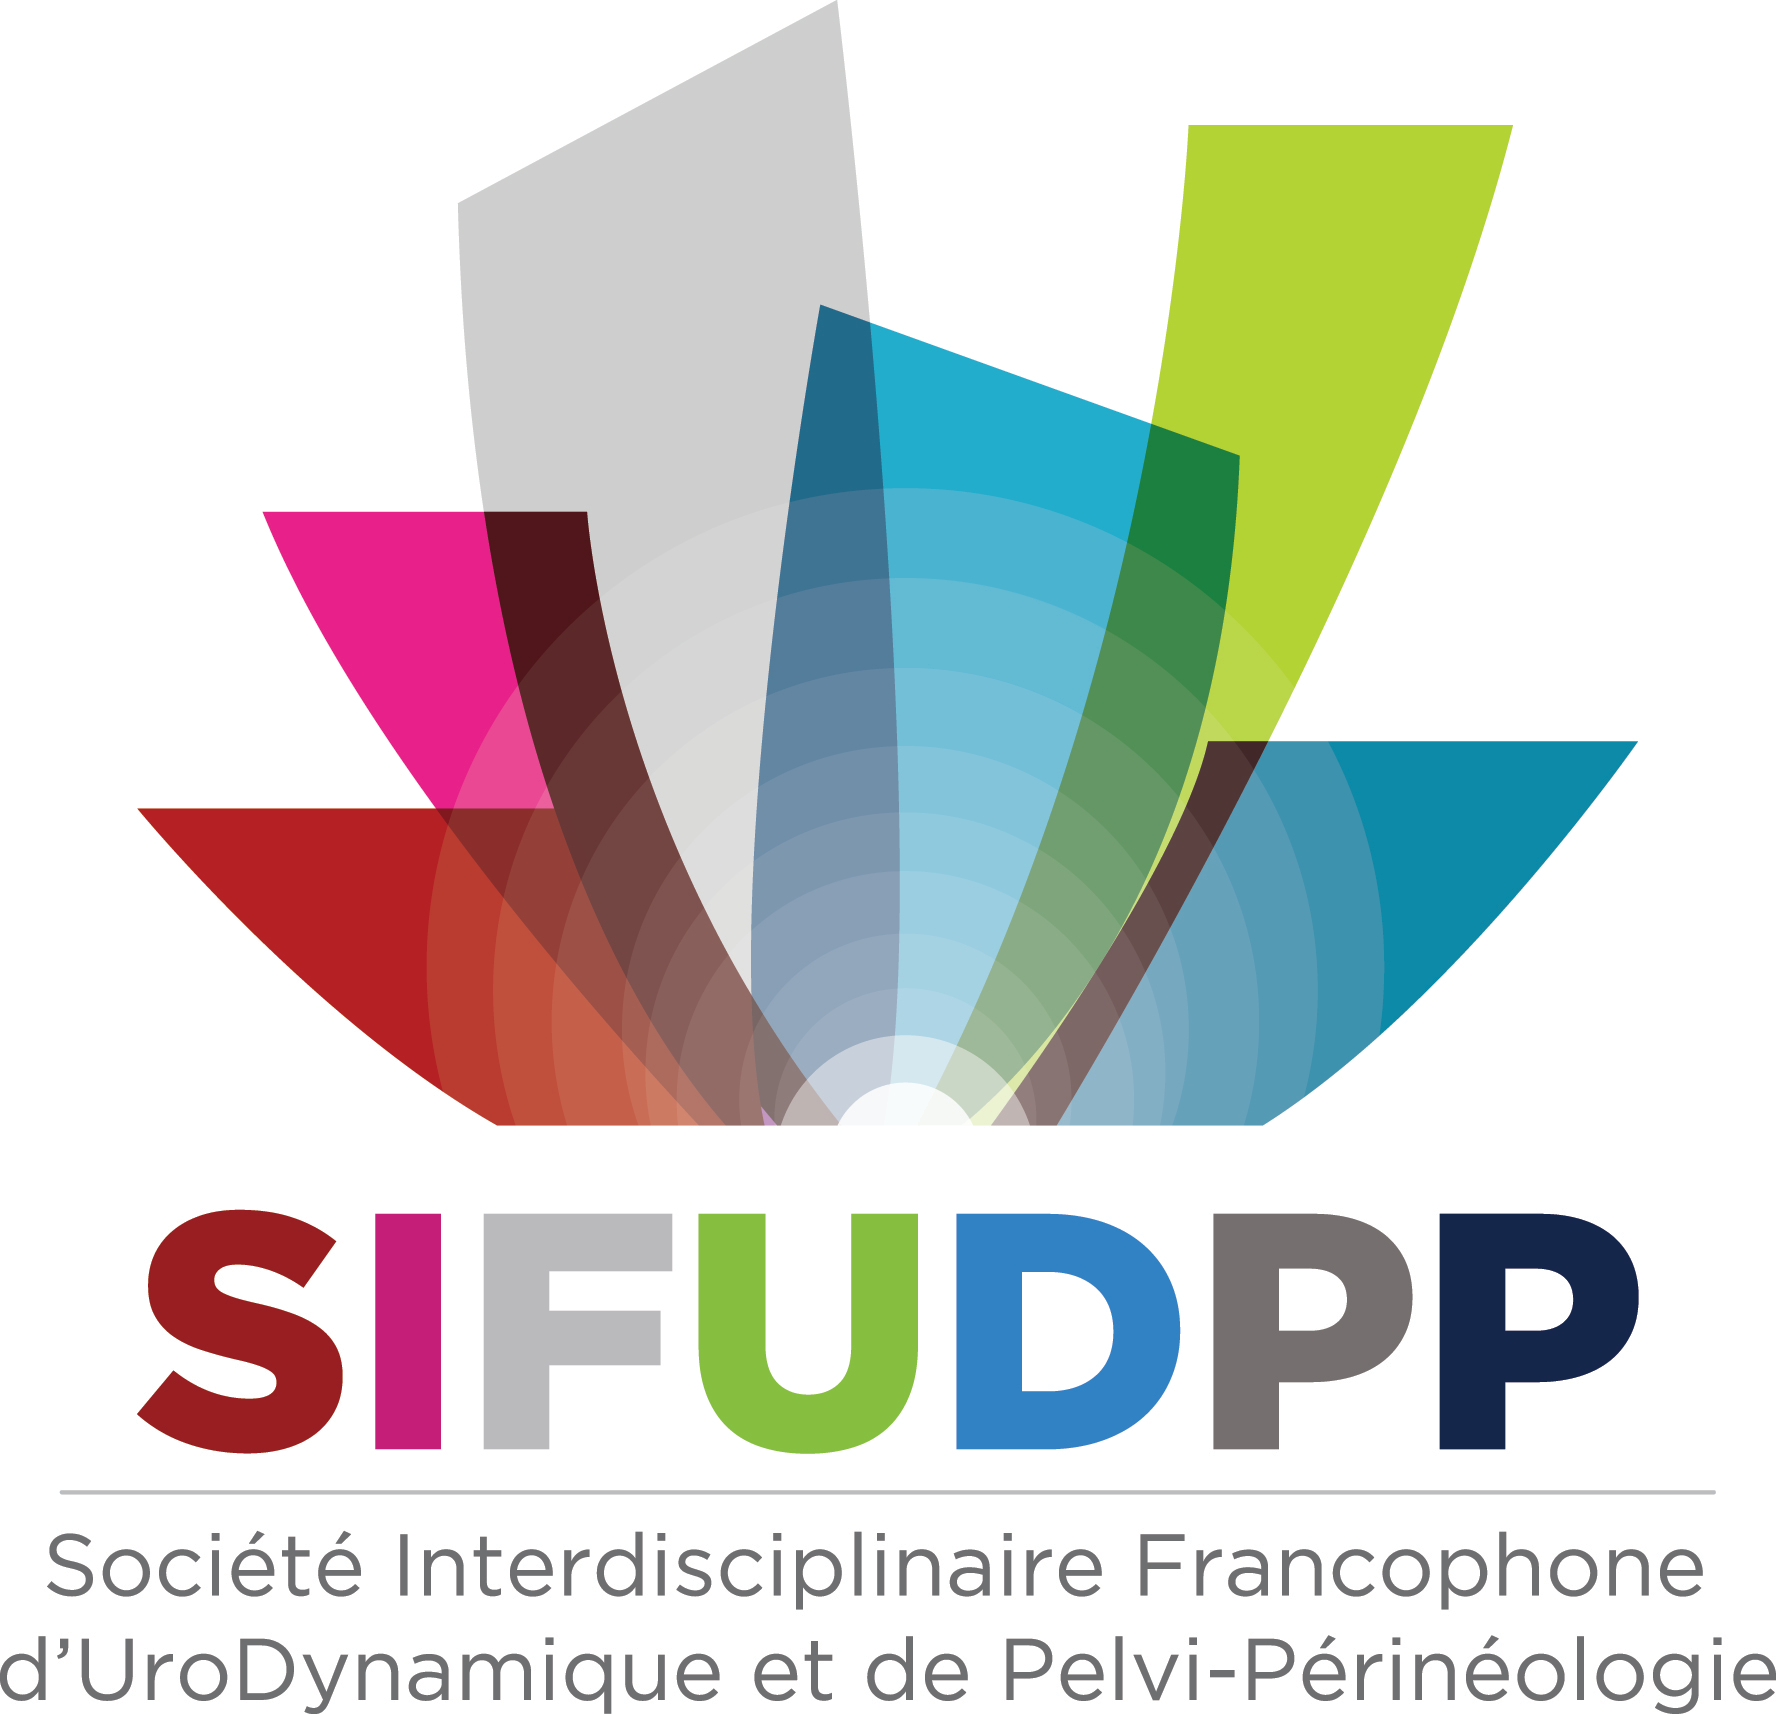 SIFUD-PP La Baule 2015 : ATELIER 3 : Place de la kinésithérapie dans la prise en charge des dysuries